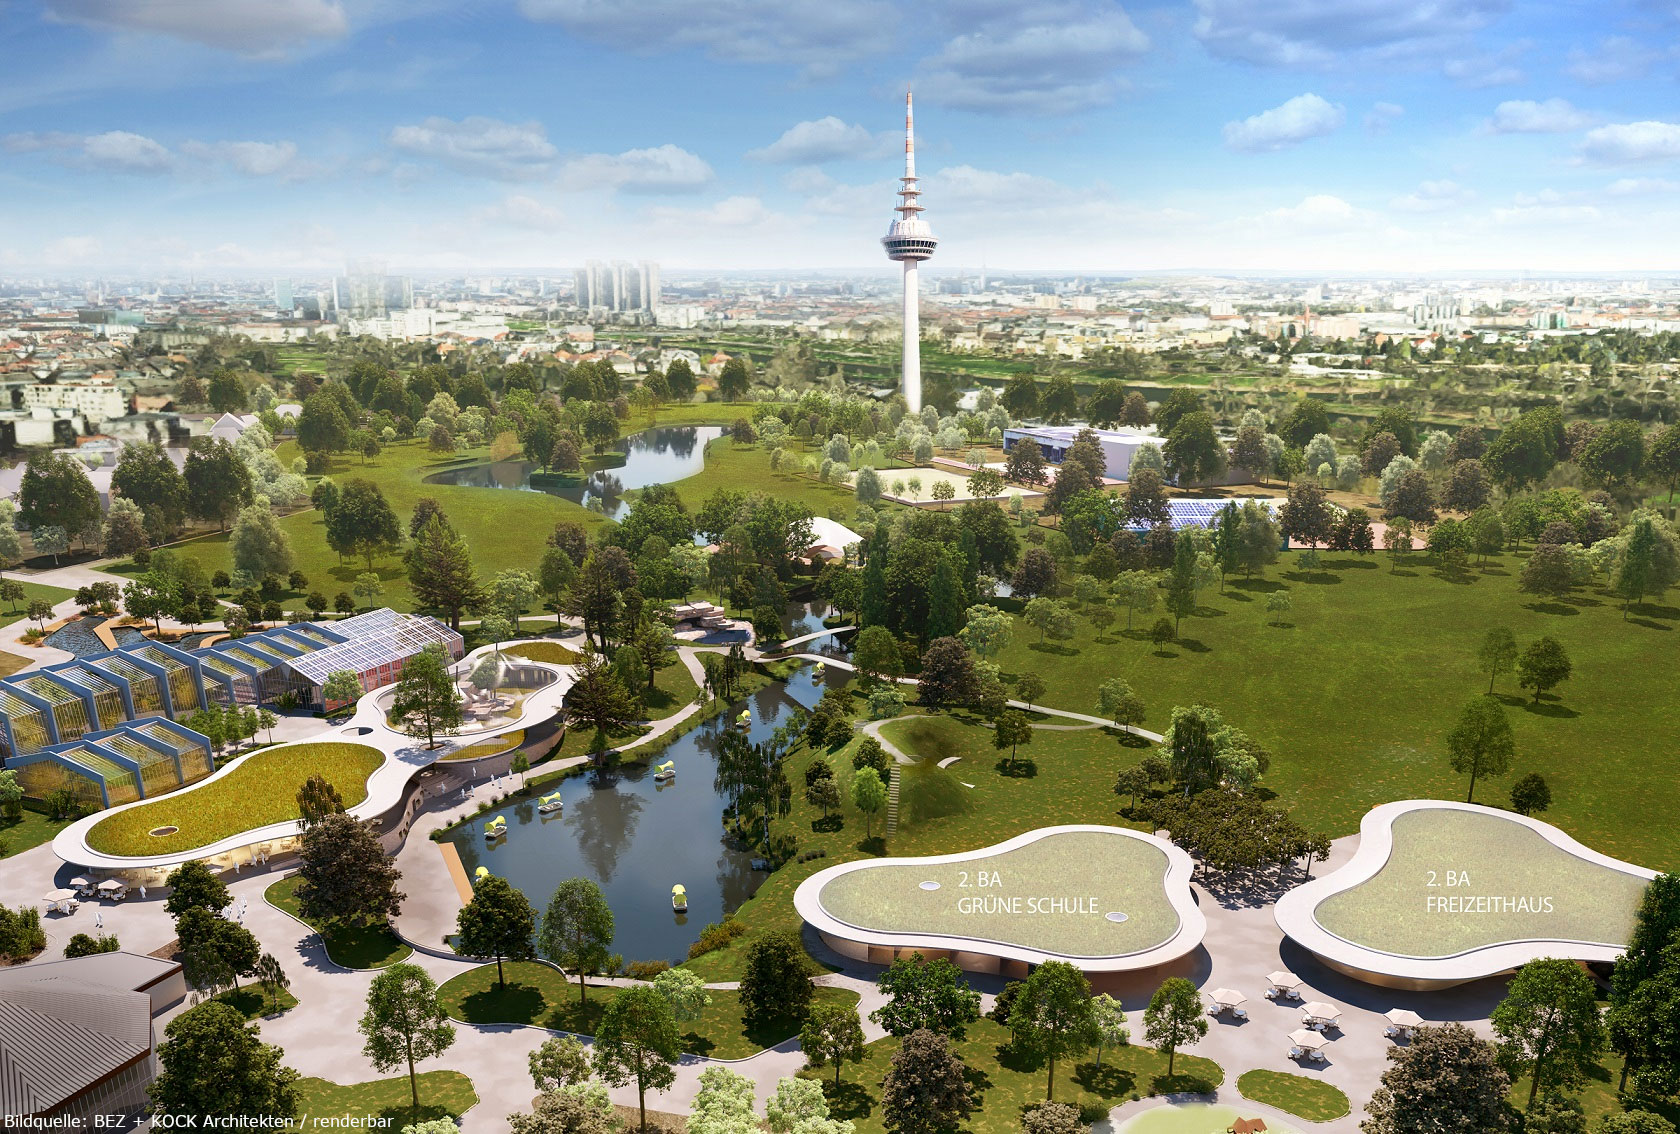 Neue Parkmittte Luisenpark
© Rendering: BEZ + KOCK Architekten